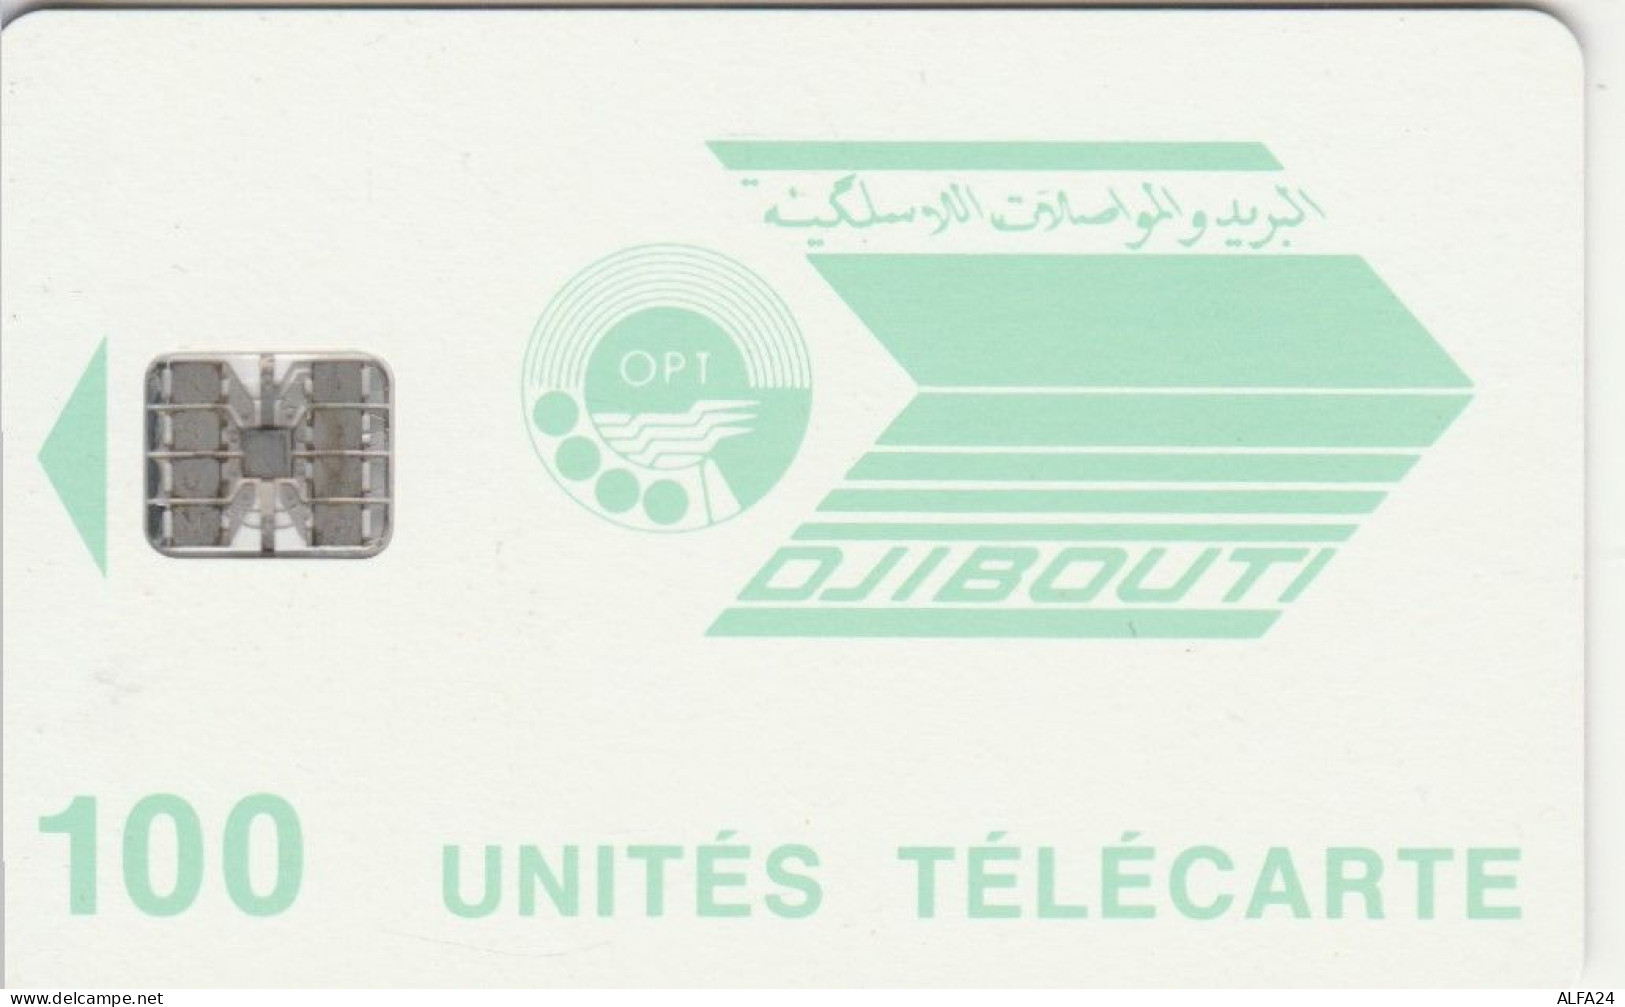 PHONE CARD DJIBUTI  (E97.17.5 - Djibouti